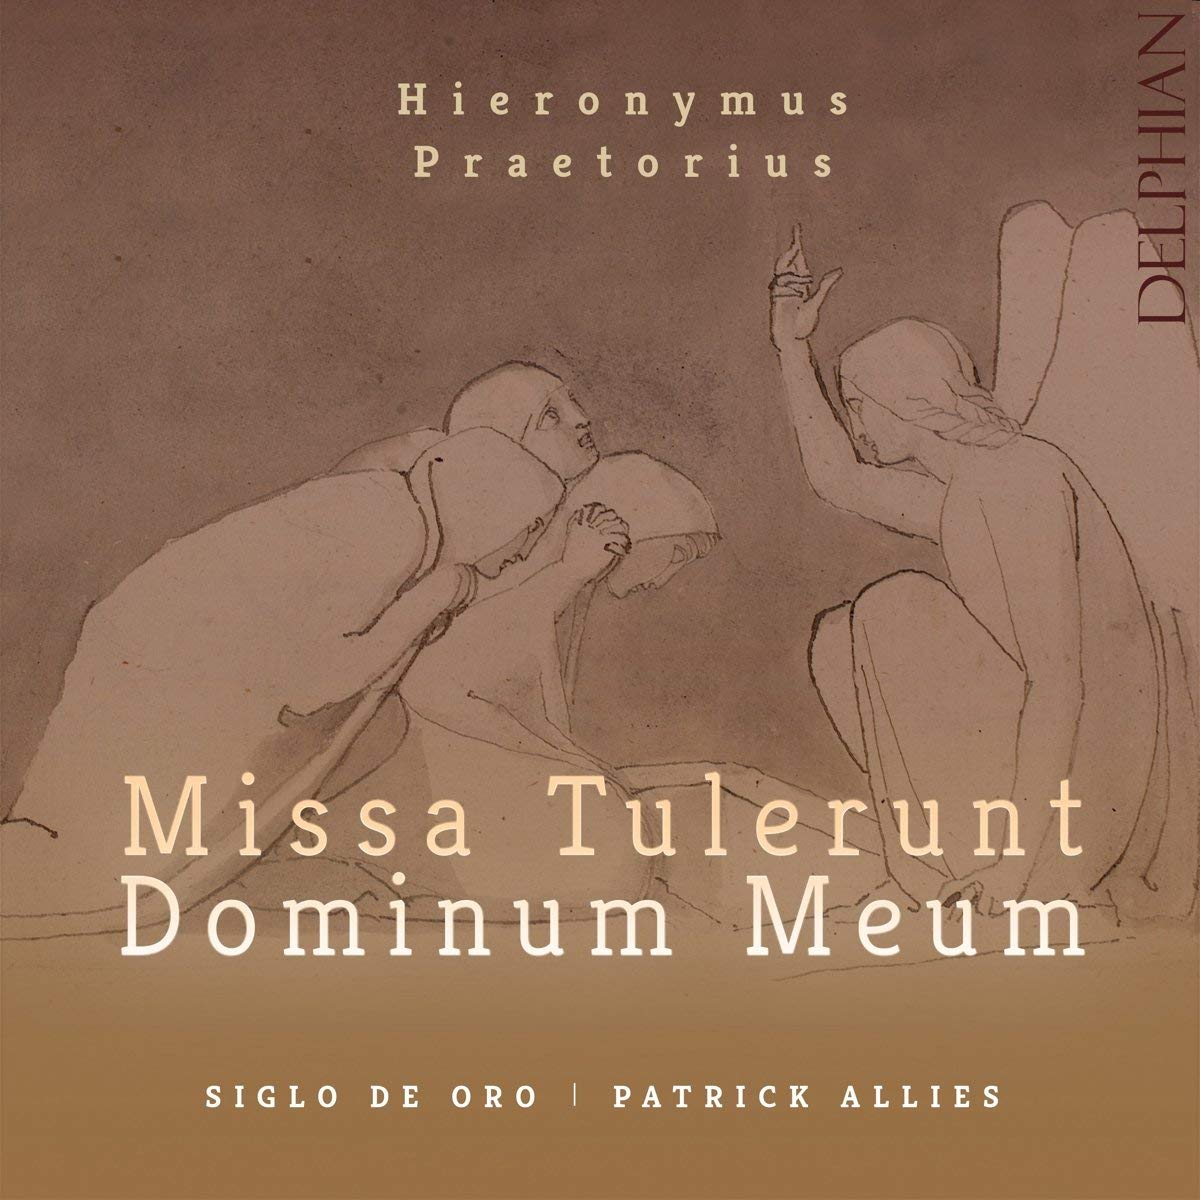 Audio Cd Hieronymus Praetorius - Missa Tulerunt Dominum Meum NUOVO SIGILLATO, EDIZIONE DEL 20/07/2018 SUBITO DISPONIBILE